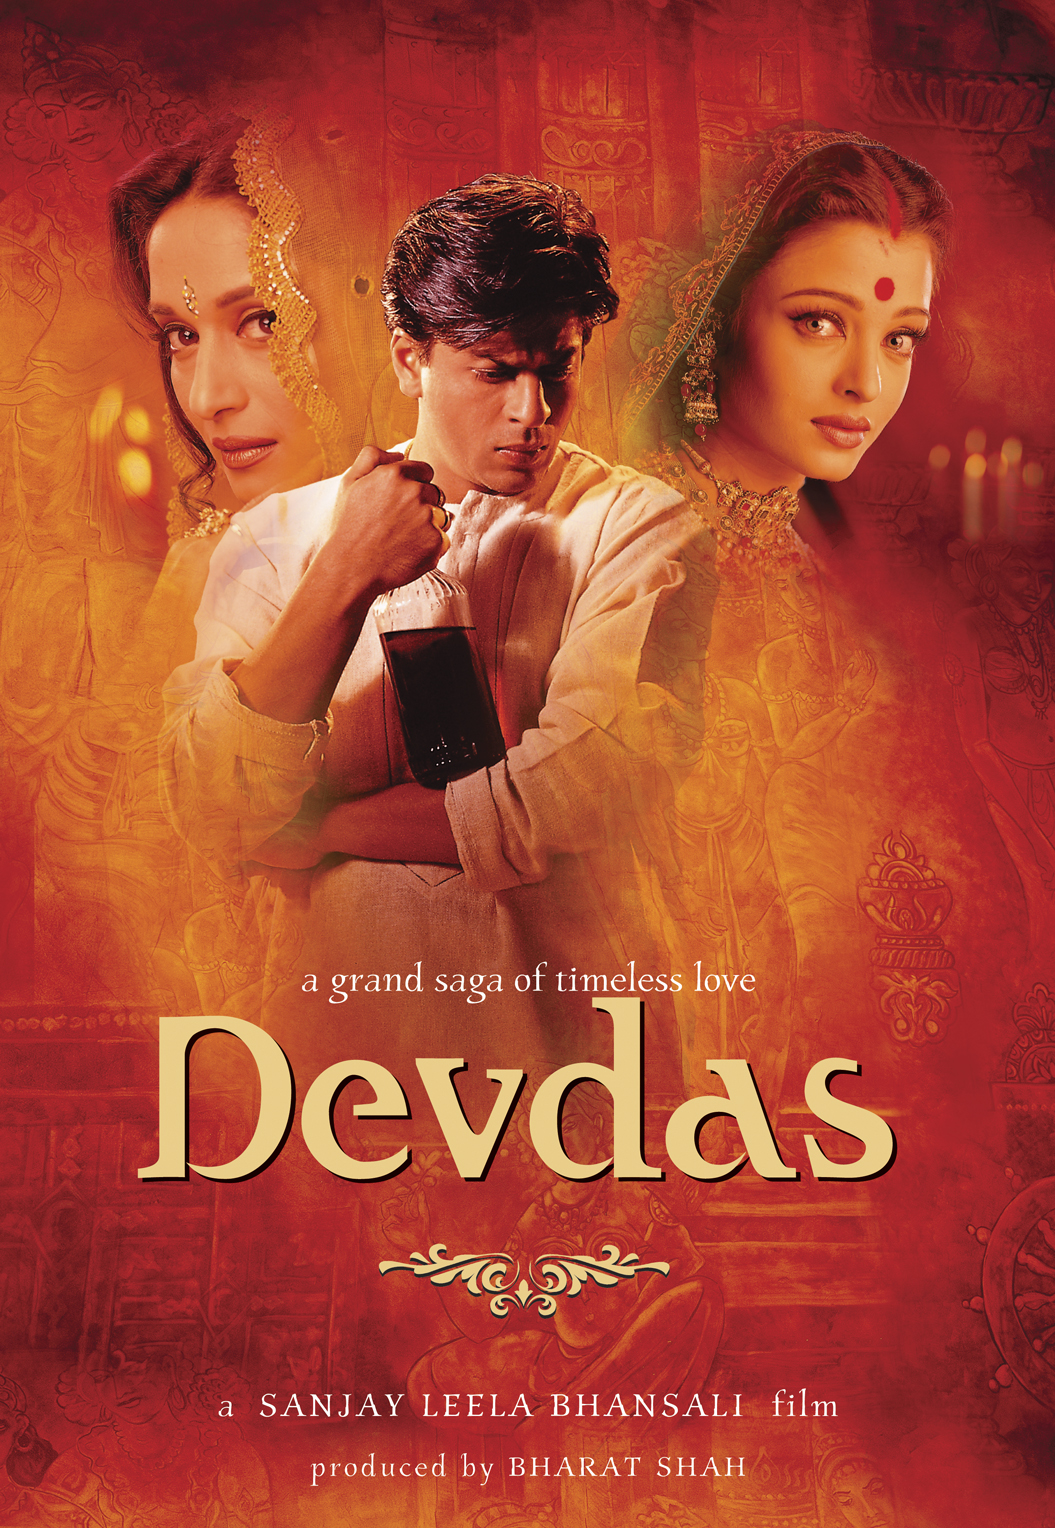 Best Diwali Movies To Watch